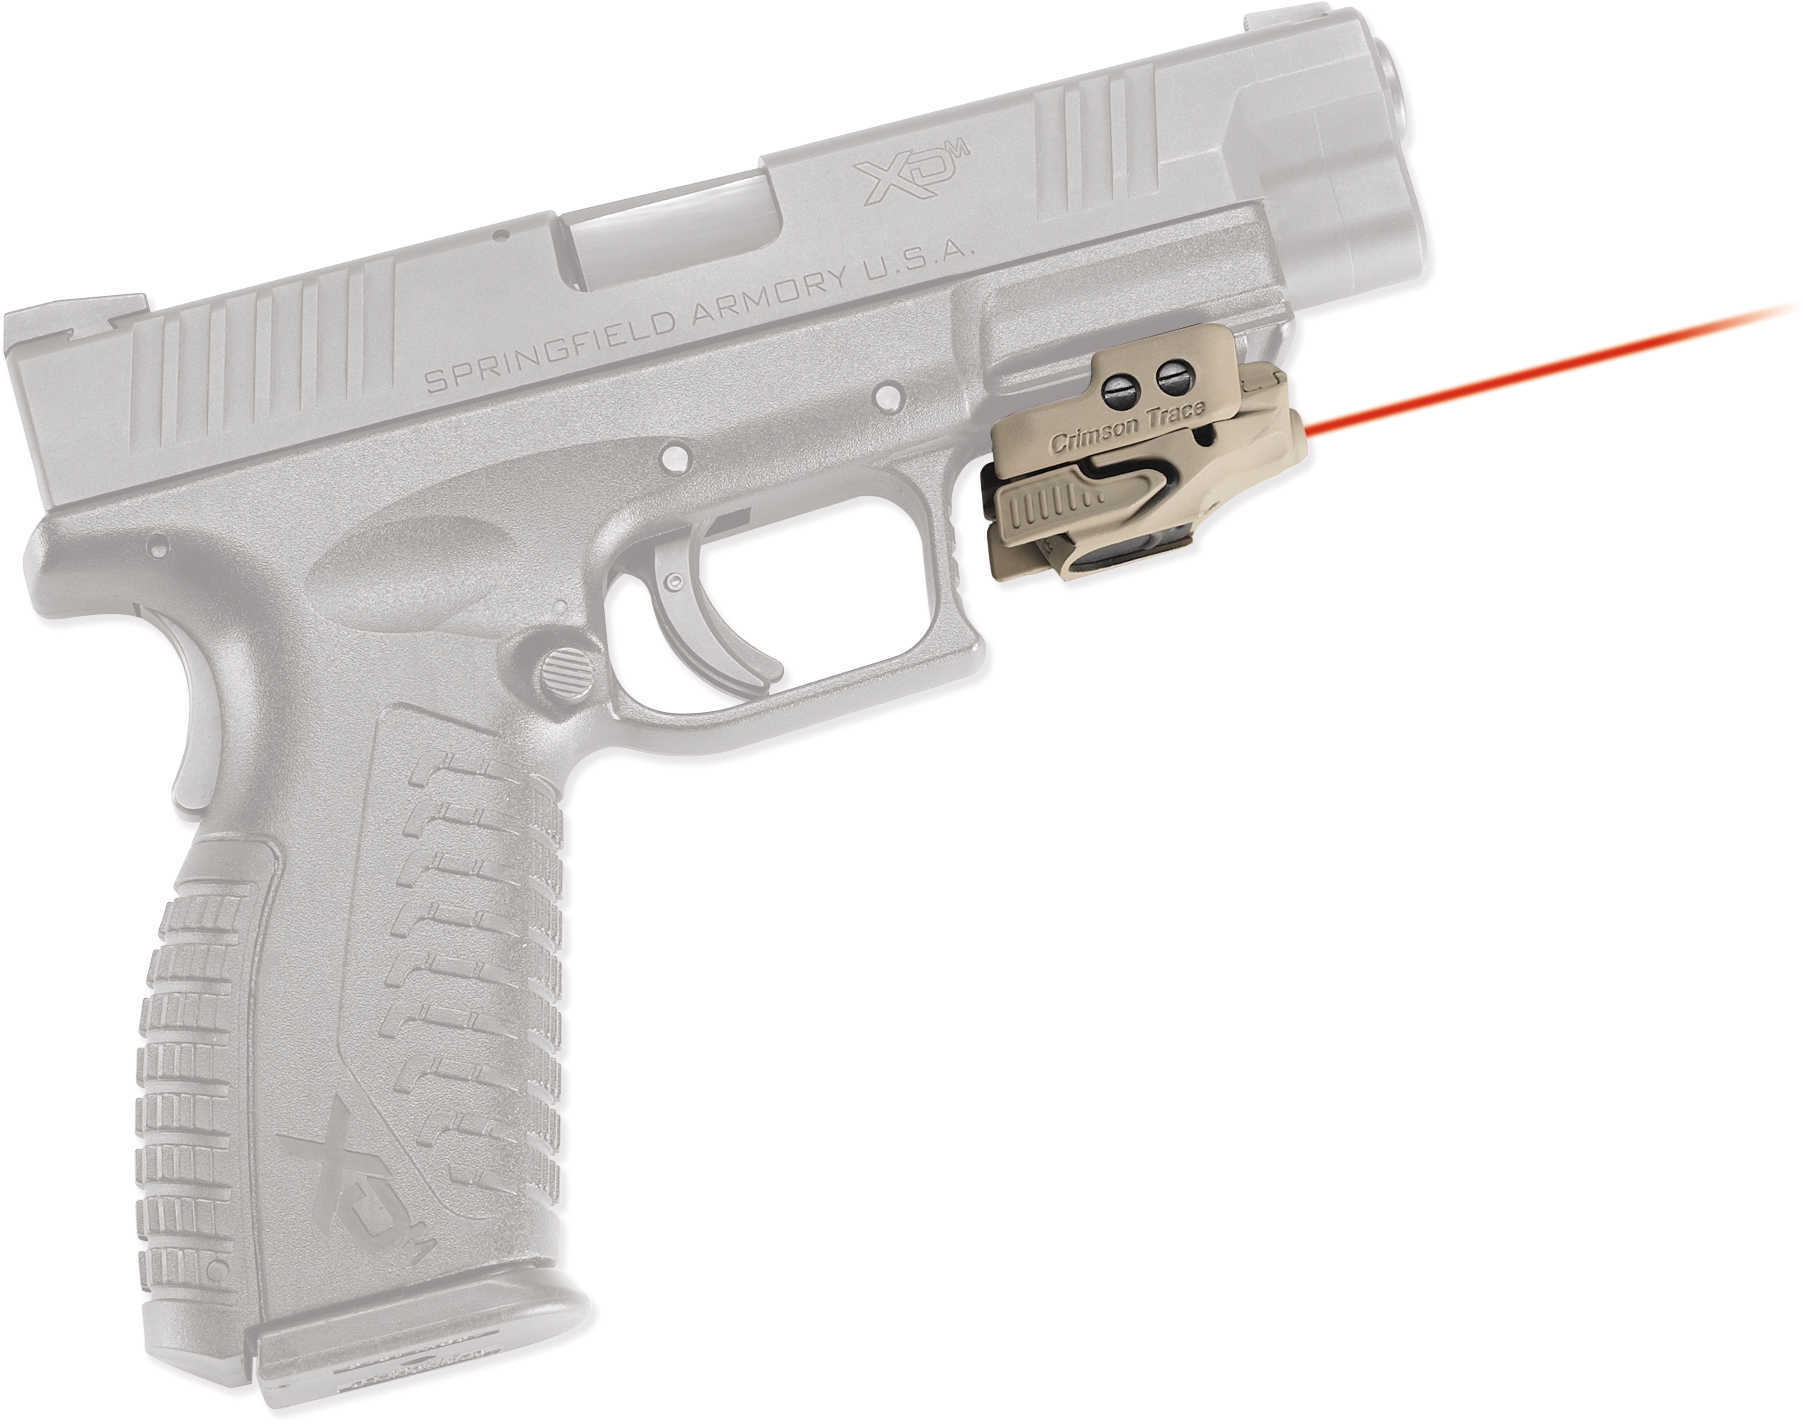 Crimson Trace Cmr201ctan Rail Master Red Laser Universal W/accessory Trigger Guard Tan Cerakote